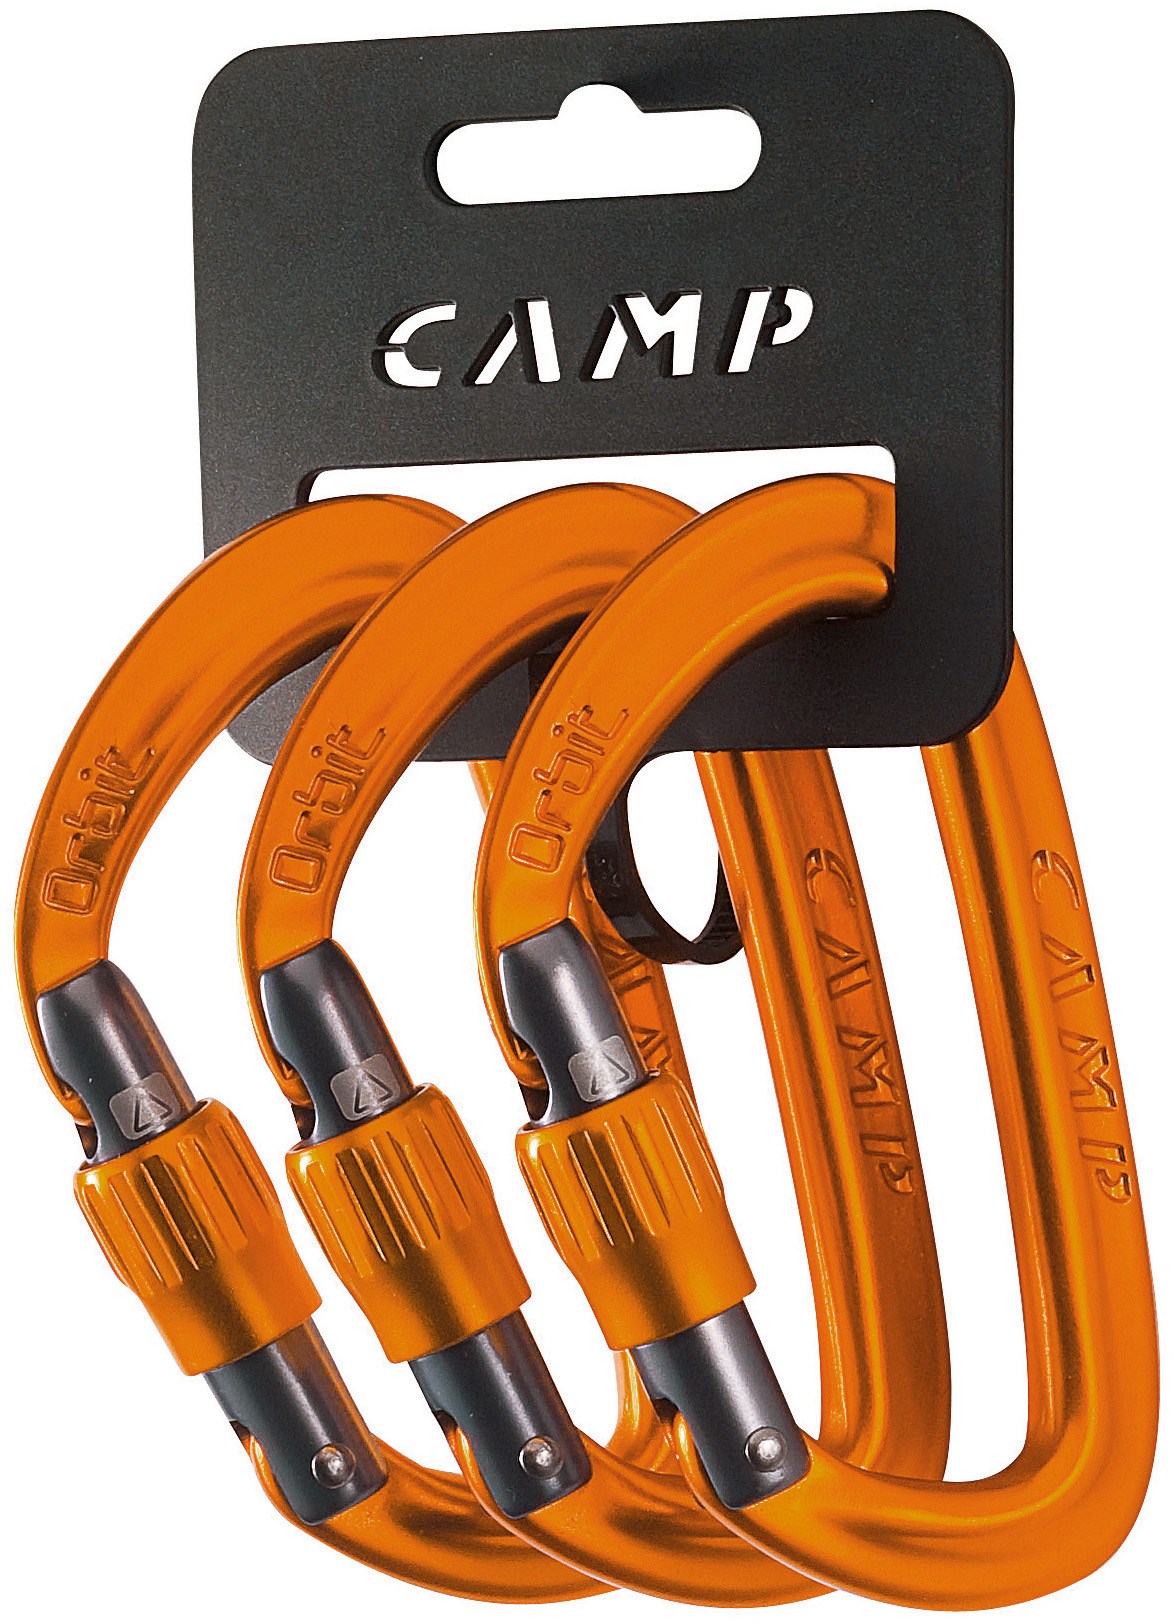 карабин orbit lock camp оранжевый Карабин Orbit Lock — упаковка из 3 шт. C.A.M.P., оранжевый